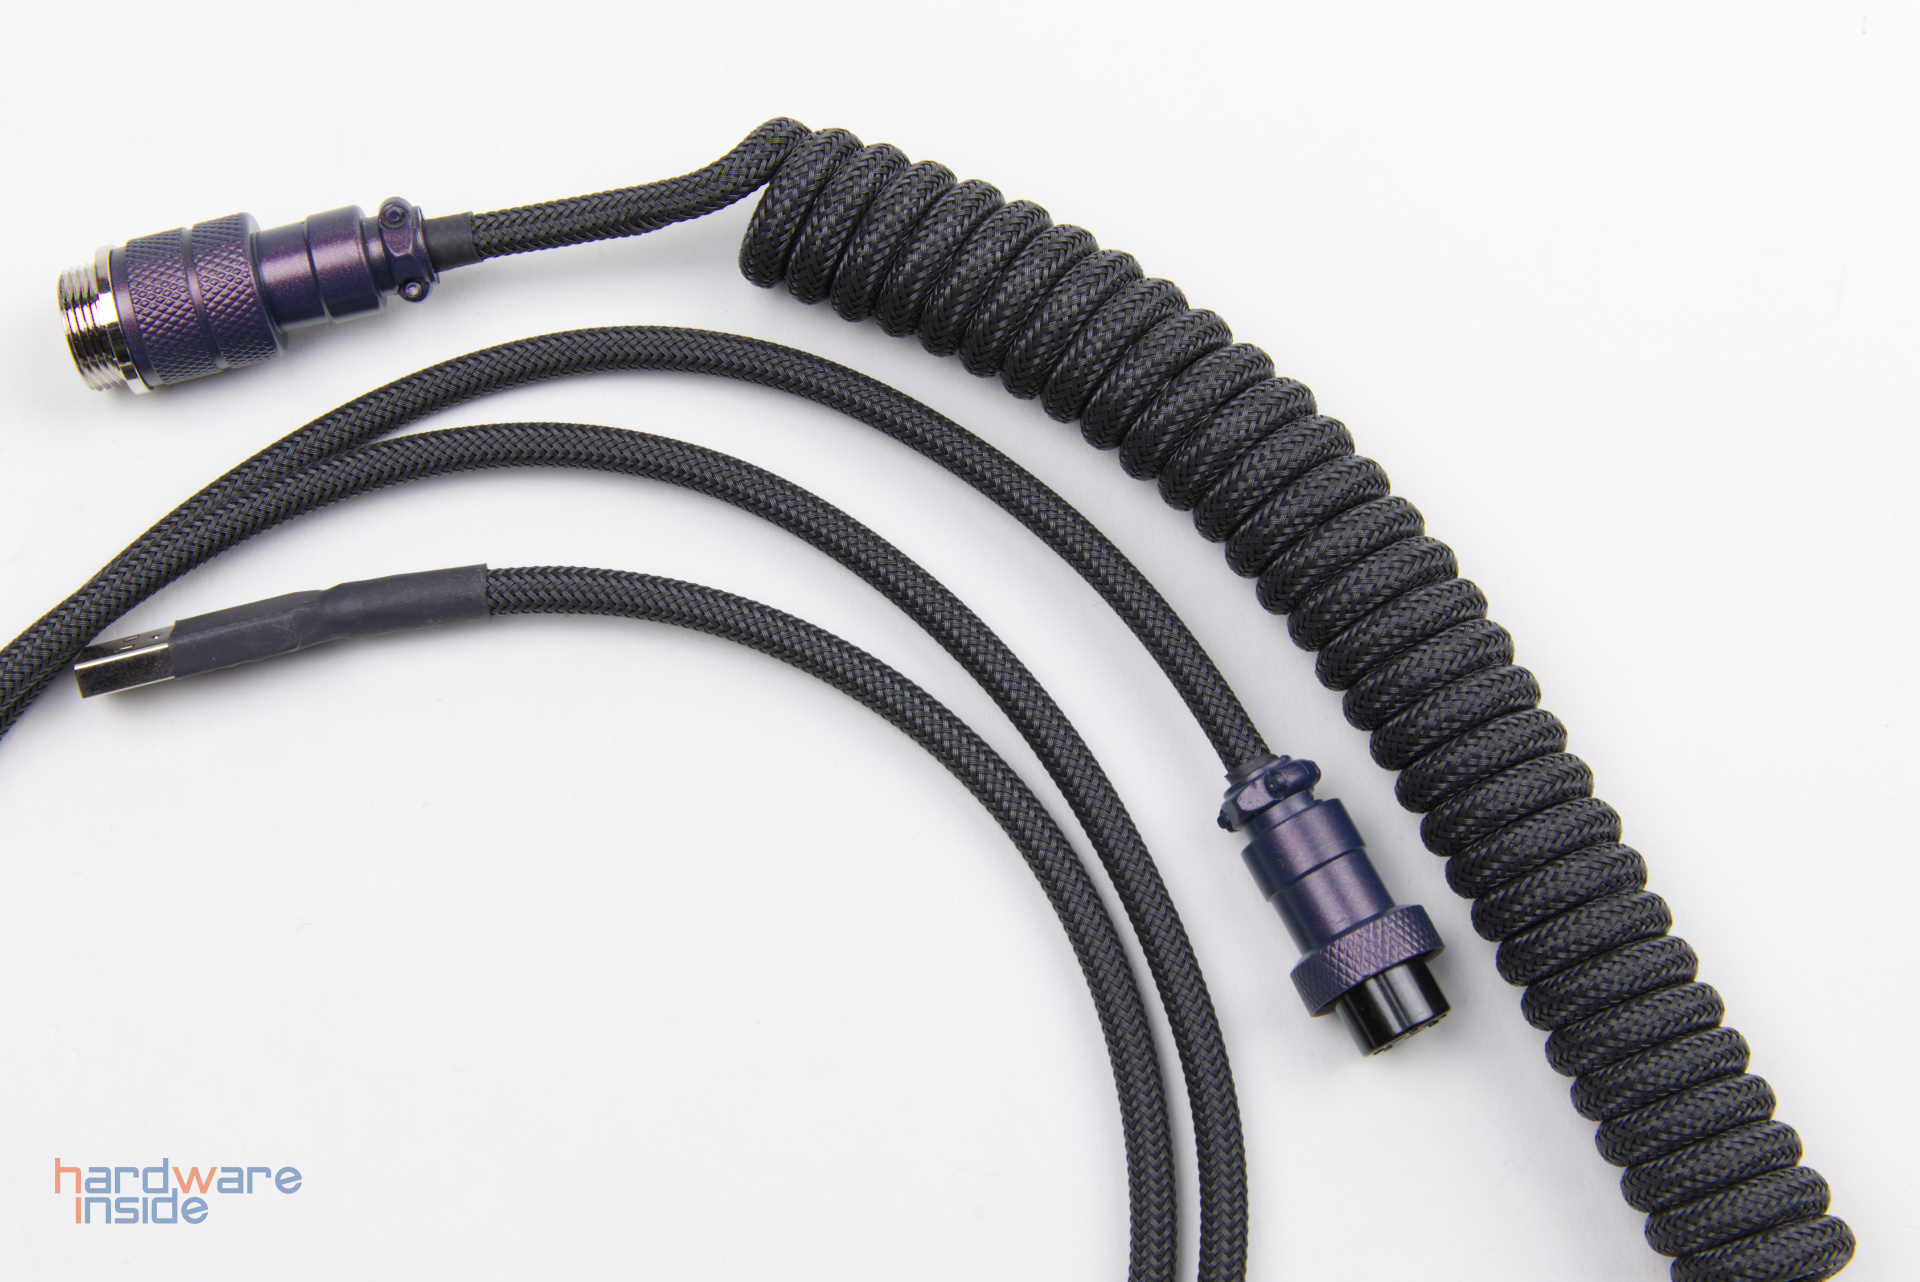 Keebstuff-Kabelmanufaktur-Mechanical-Keyboard-Cables-handcrafted-6.jpg